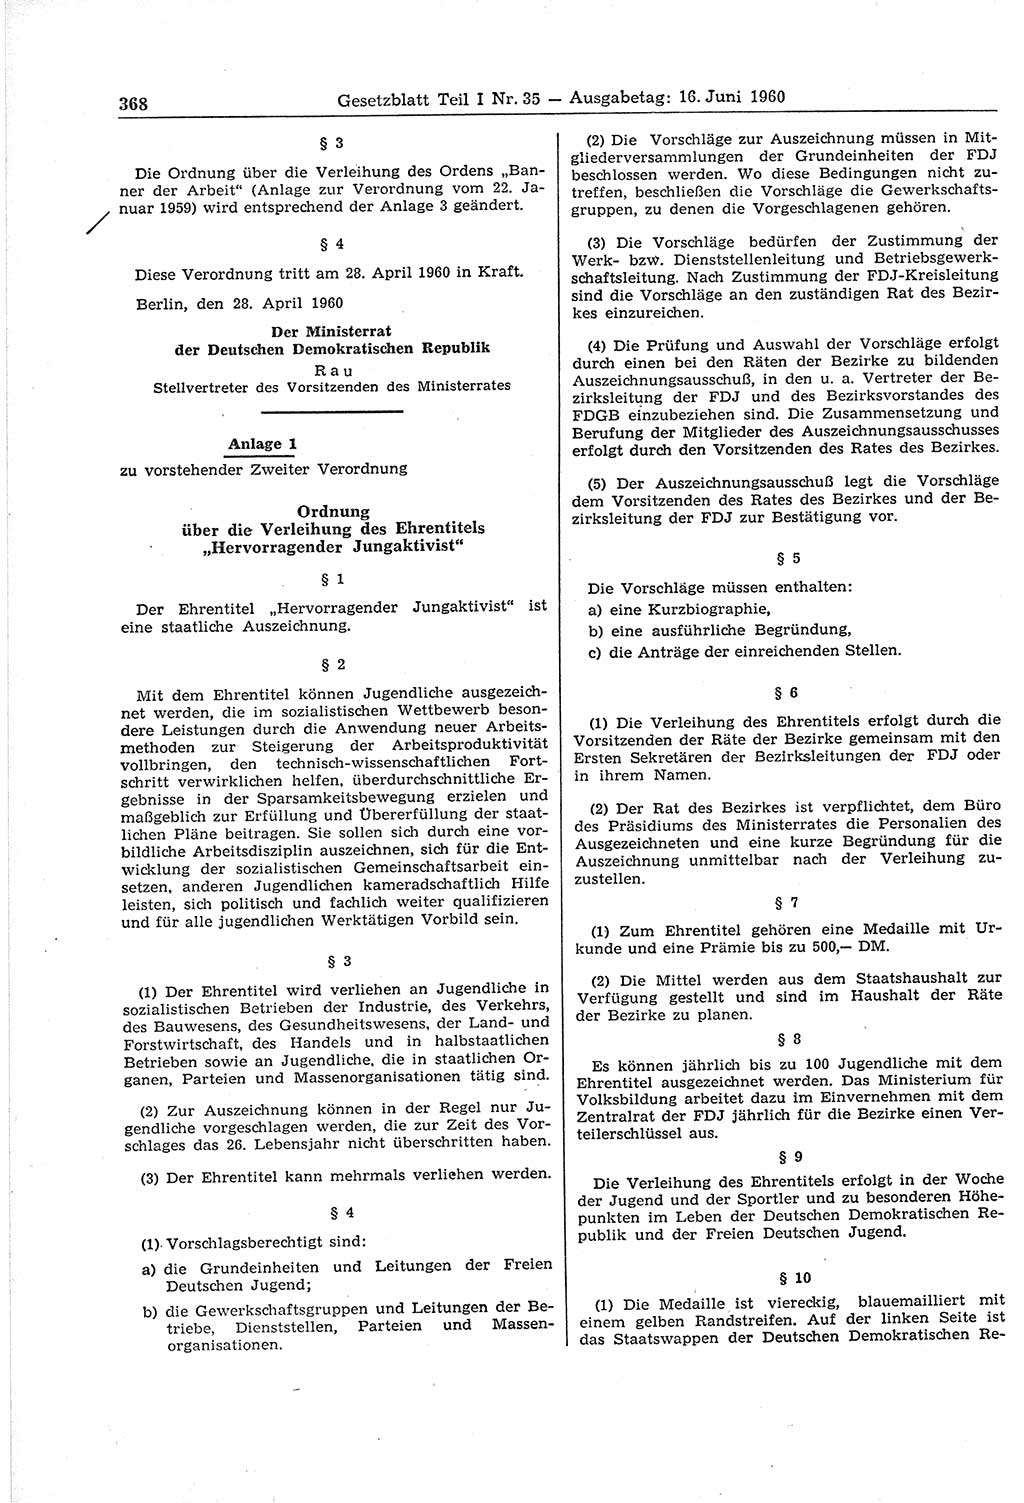 Gesetzblatt (GBl.) der Deutschen Demokratischen Republik (DDR) Teil Ⅰ 1960, Seite 368 (GBl. DDR Ⅰ 1960, S. 368)